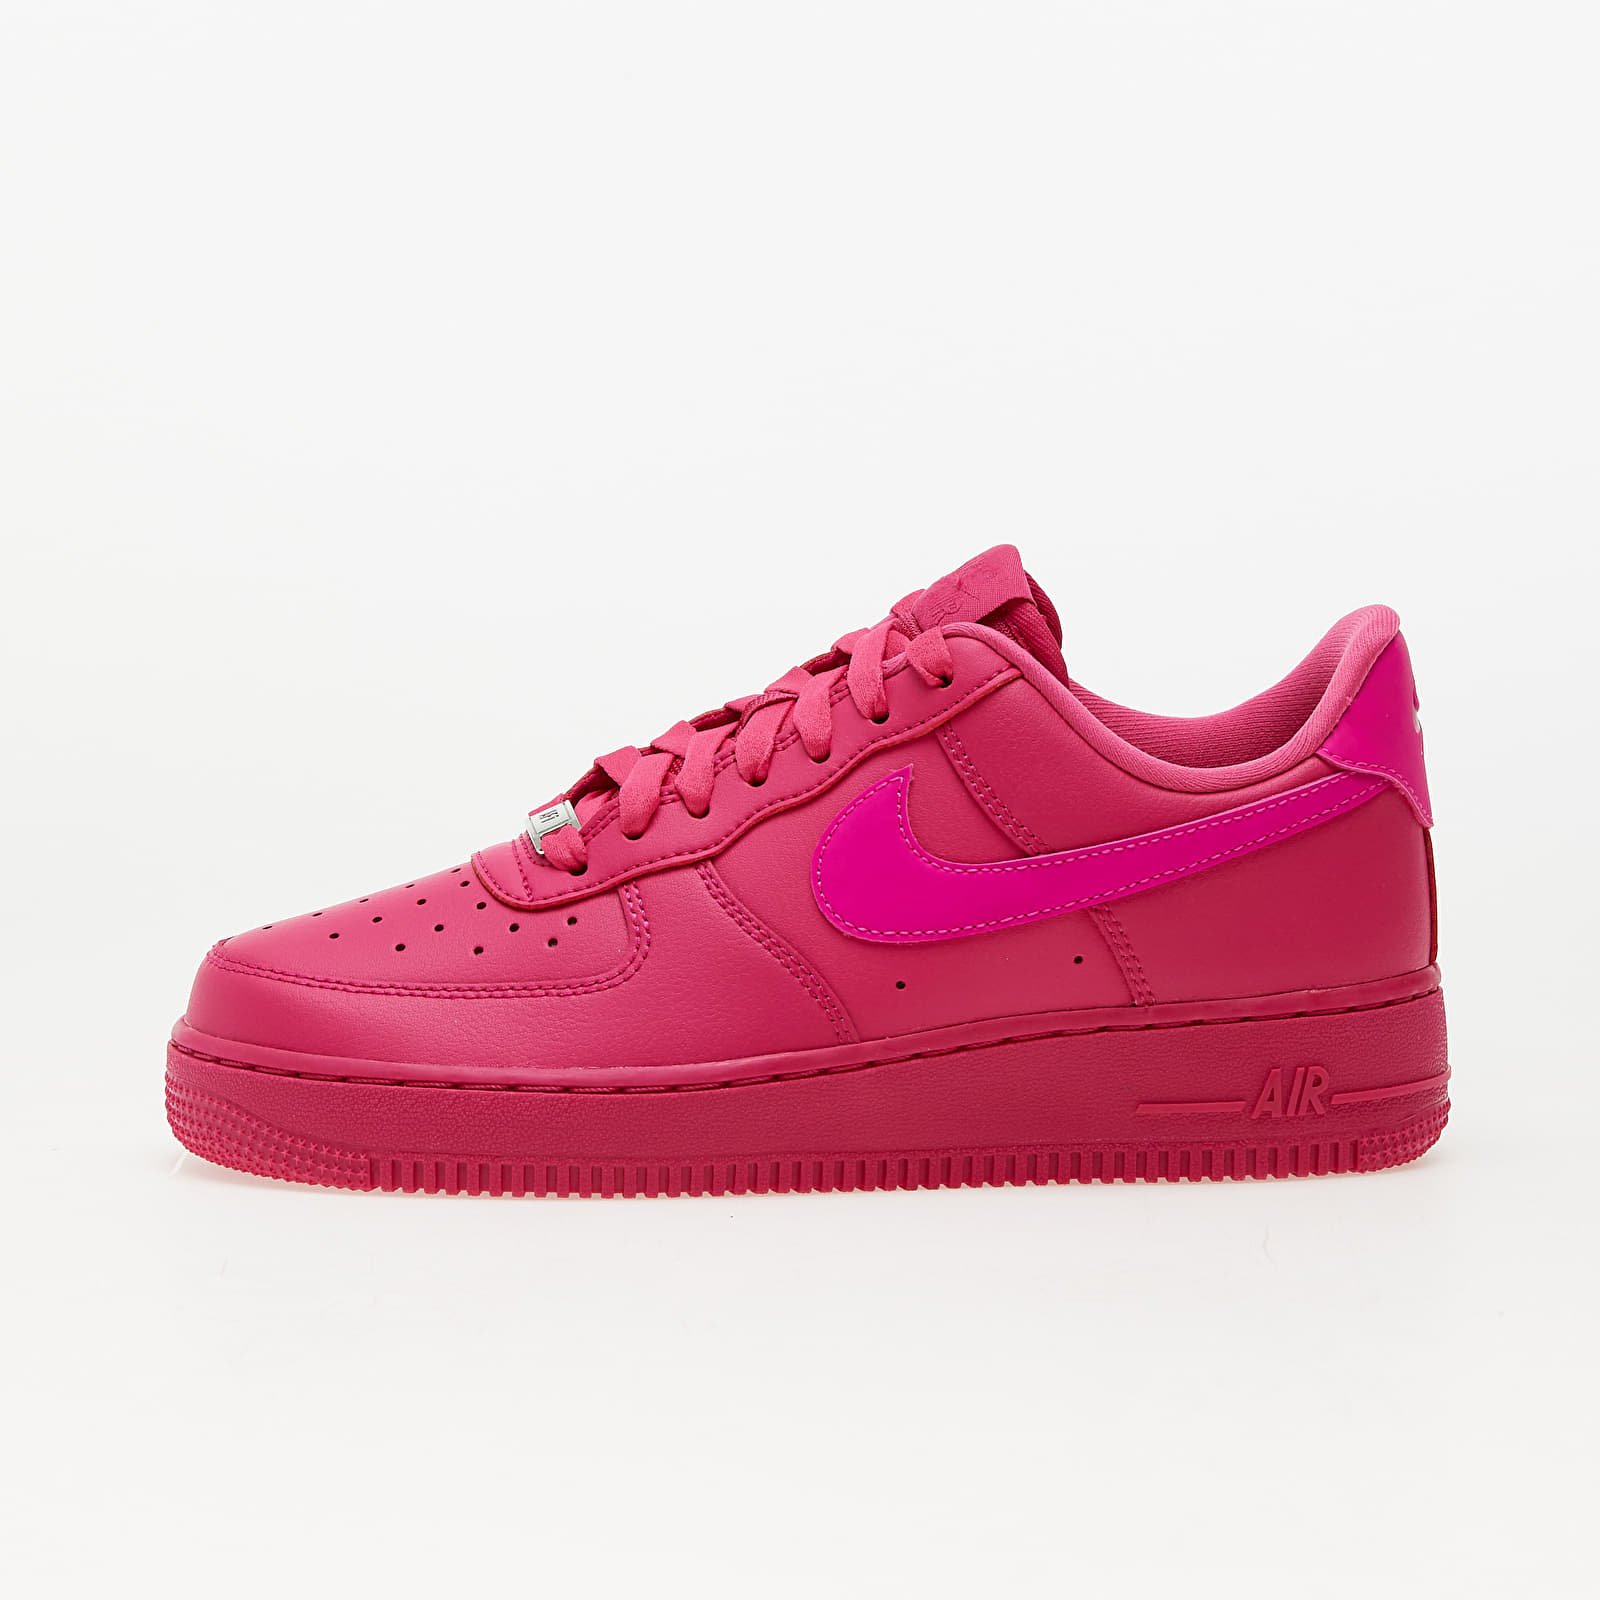 Γυναικεία πάνινα παπούτσια και αθλητικά παπούτσια Nike Air Force 1 '07 Fireberry/ Fierce Pink